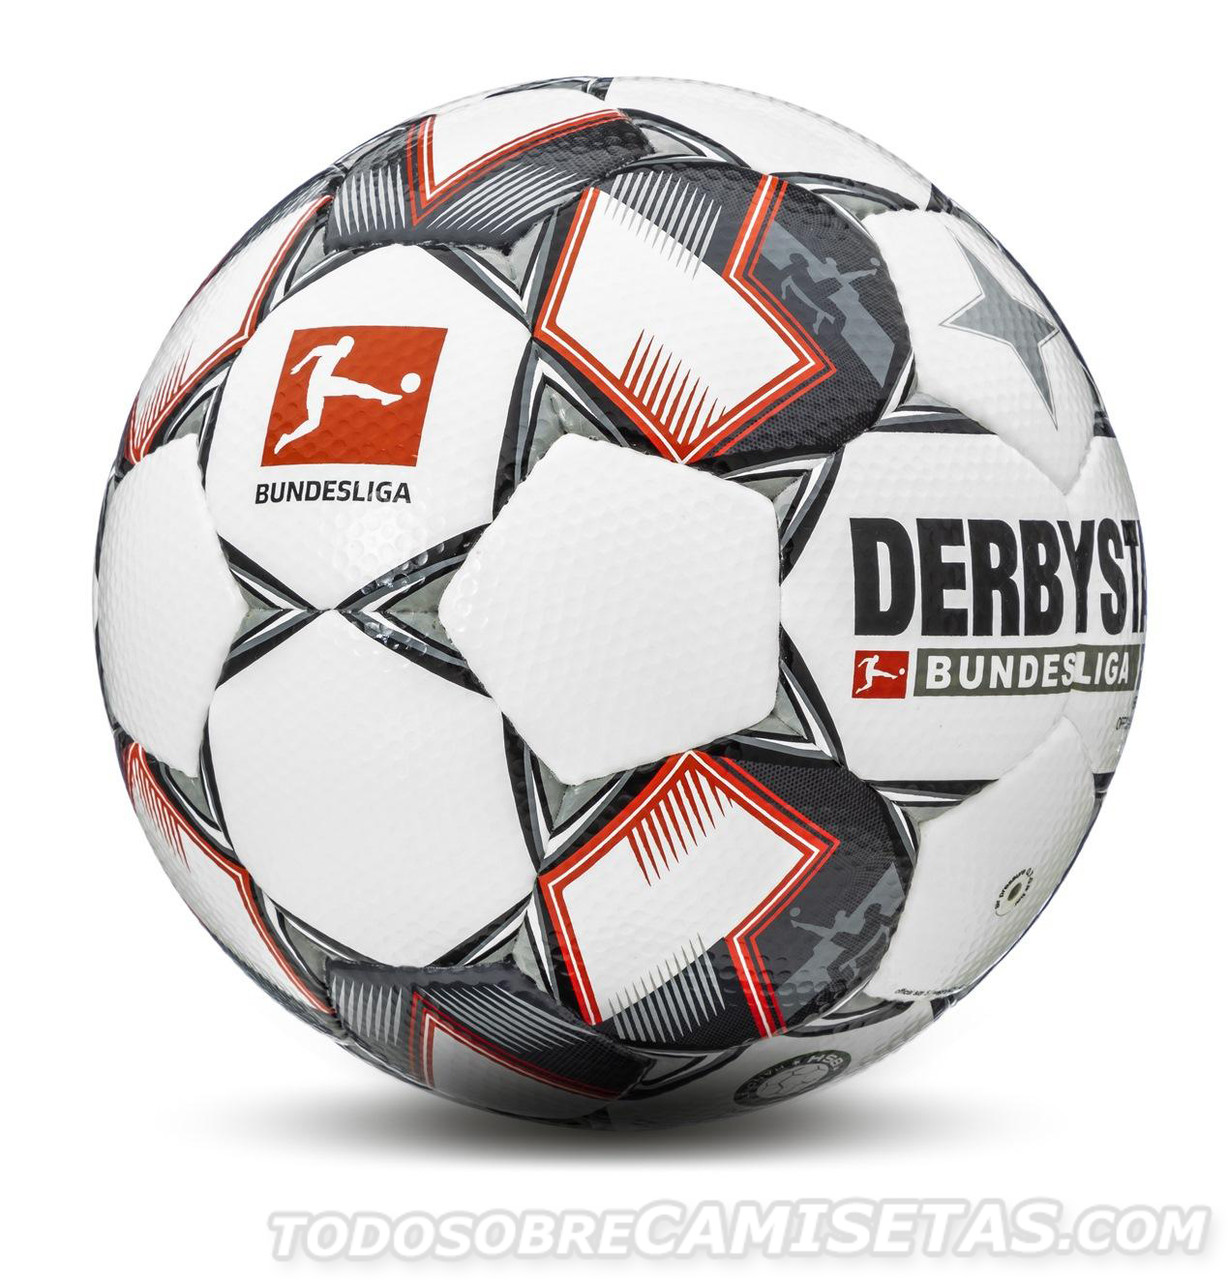 Derbystar Bundesliga Ball